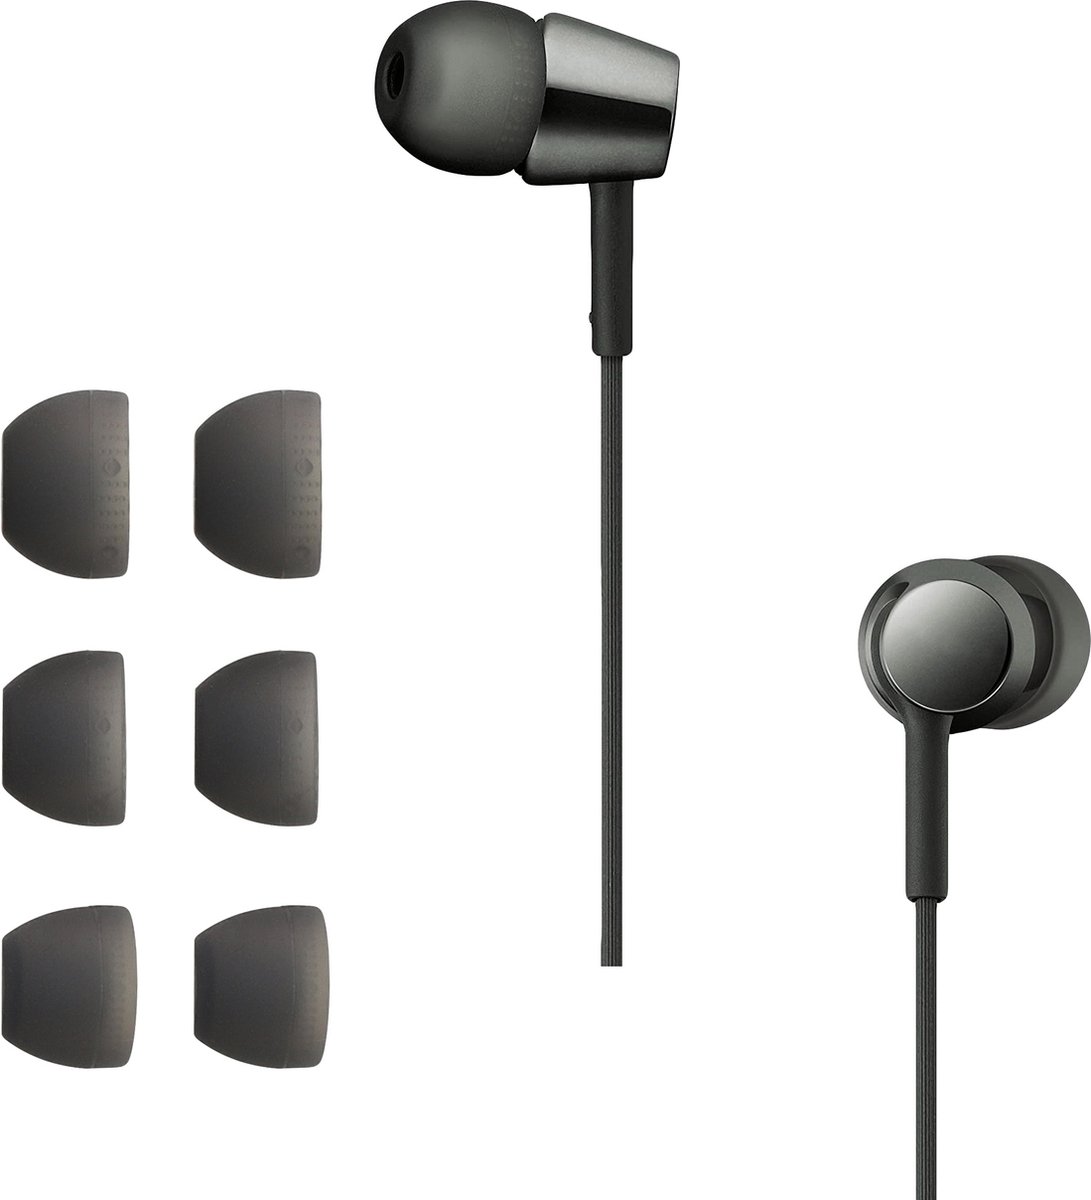 Ecouteurs Bluetooth Sony WI-C300 Noir - Ecouteurs - Achat & prix